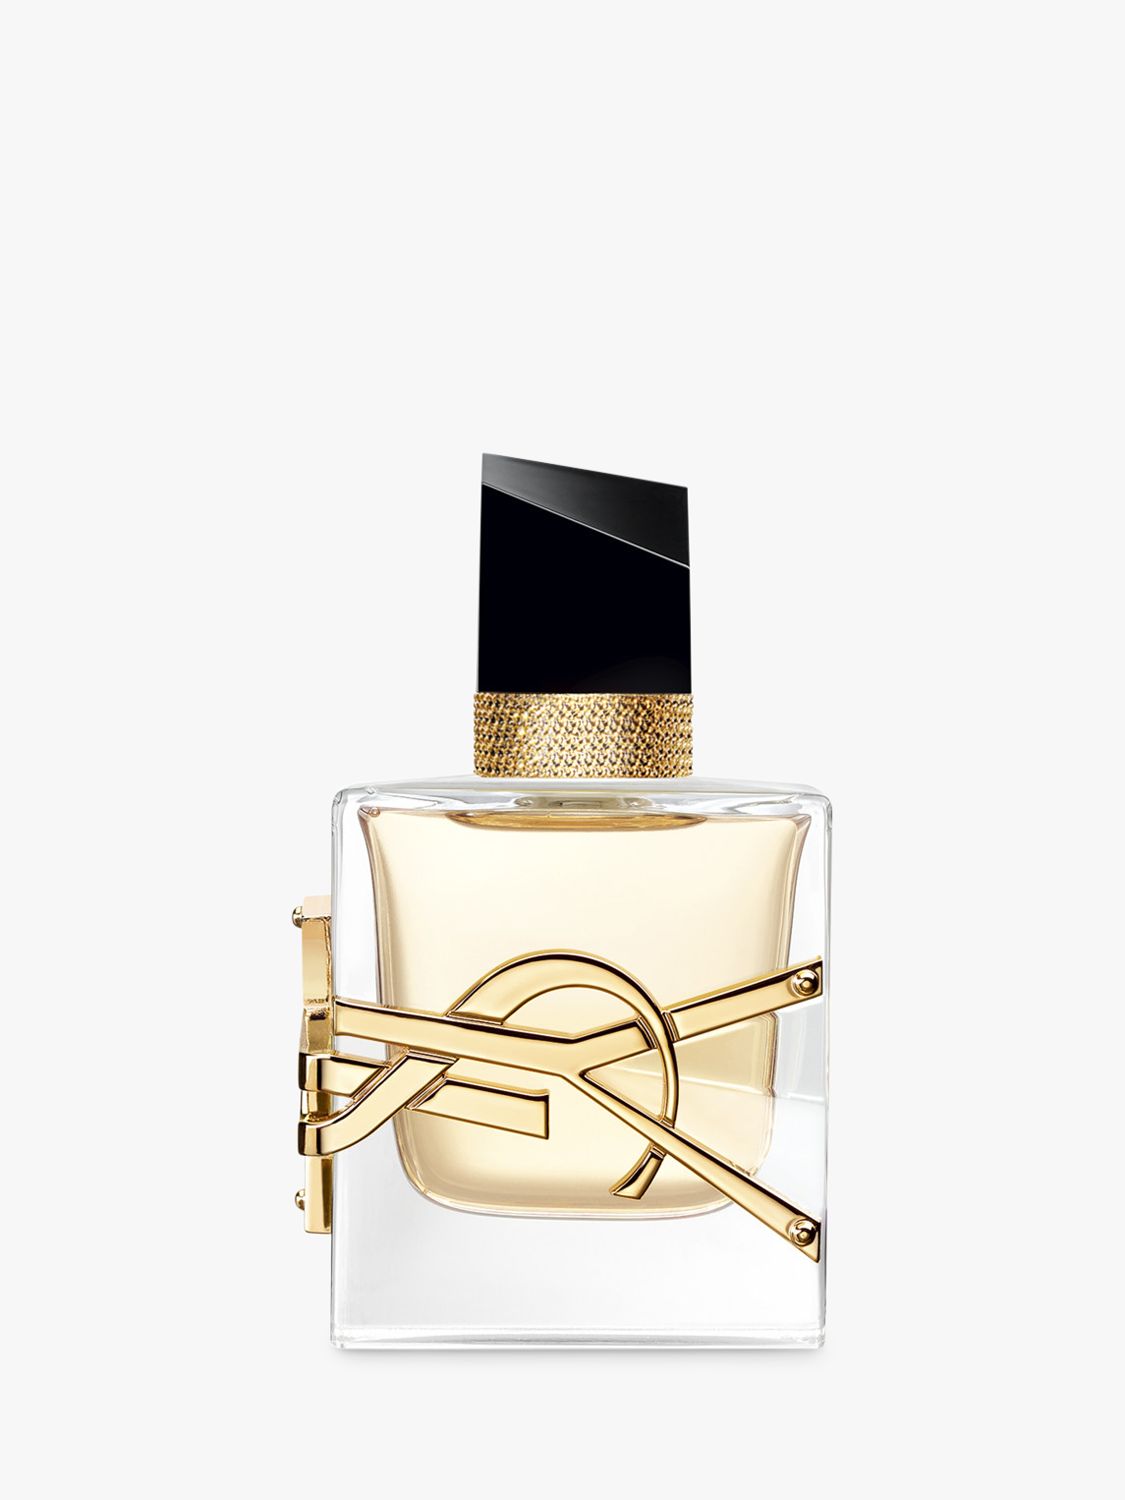 Yves Saint Laurent Libre Eau de Parfum, 30ml